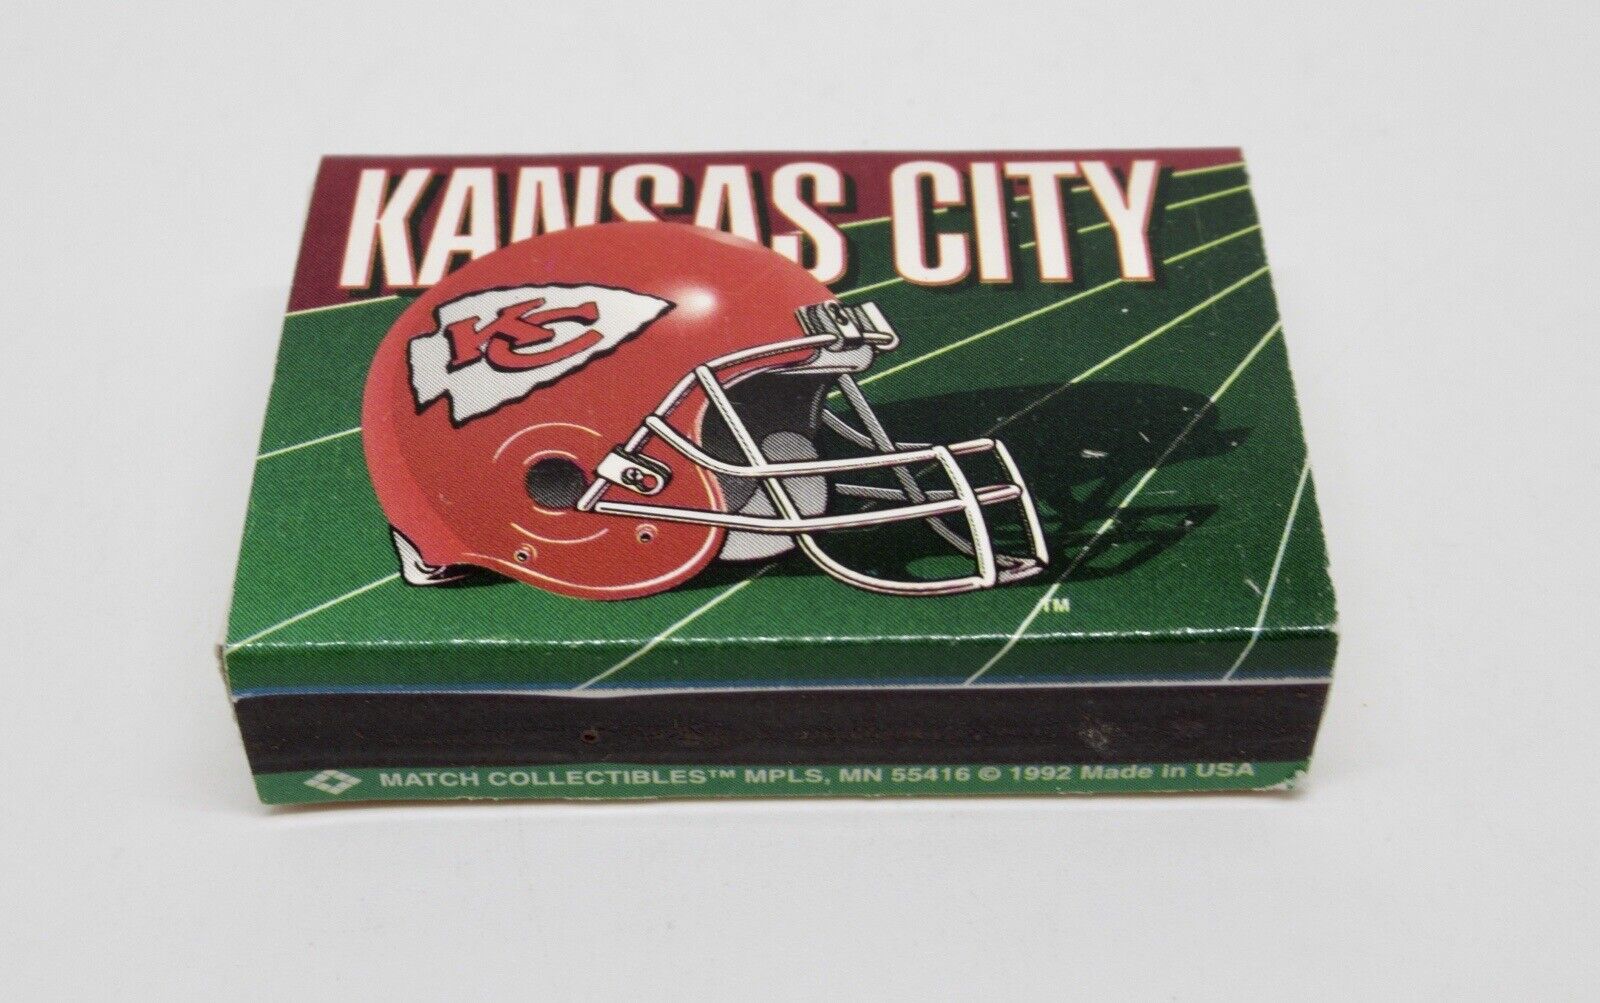 Kansas City Chiefs NFL Football Team Matchbook / Matchbox